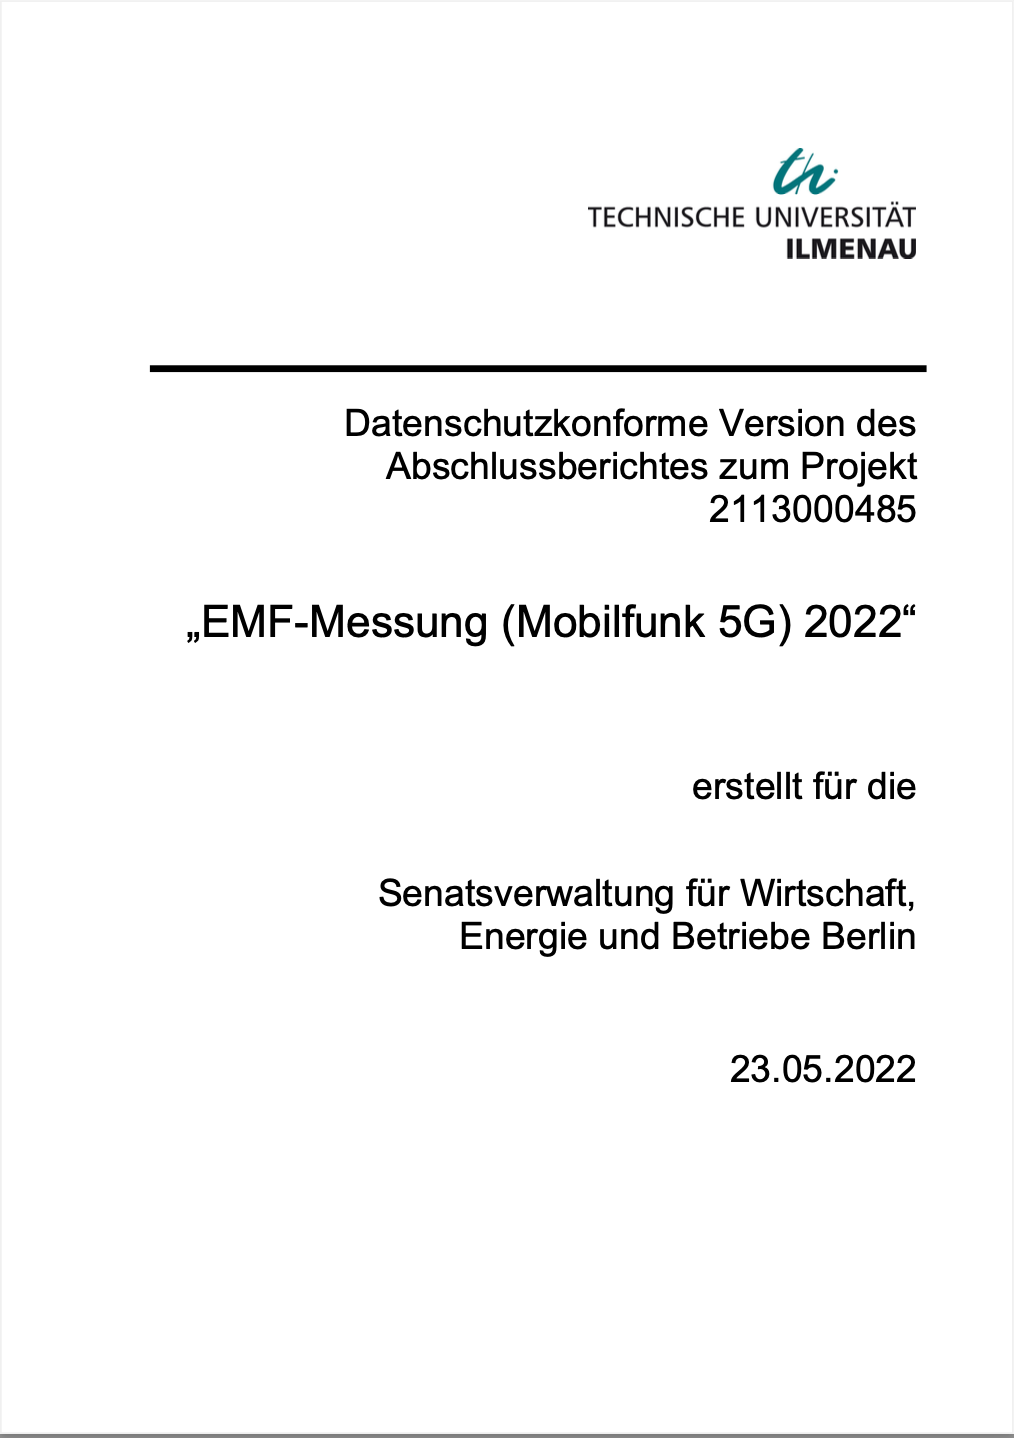 Messungen der elektromagnetischen Immission durch Mobilfunksendeanlagen in Berlin